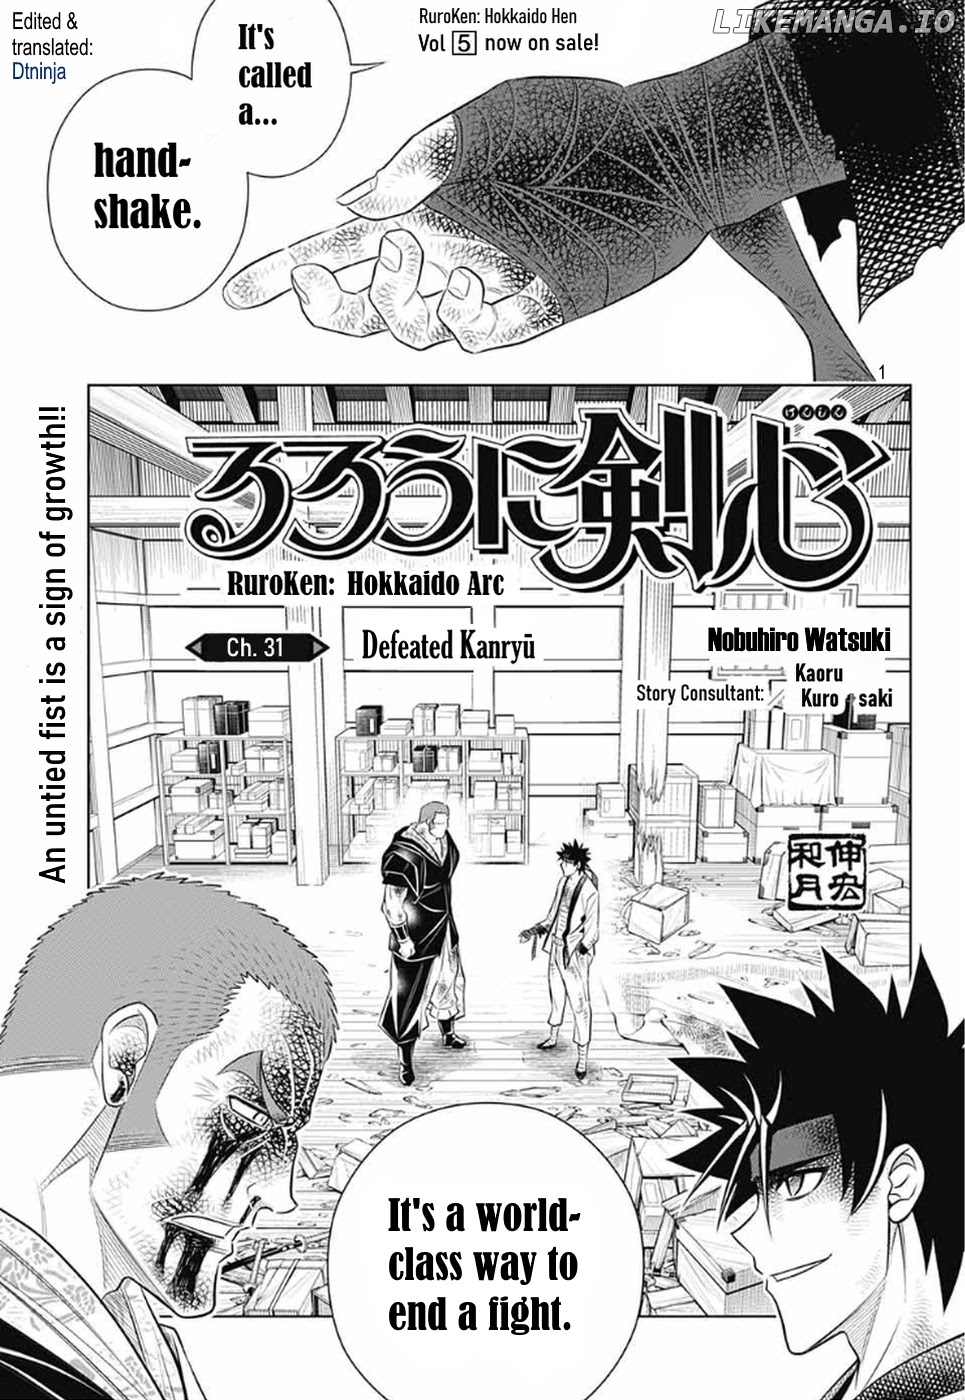 Rurouni Kenshin: Hokkaido Arc chapter 31 - page 1